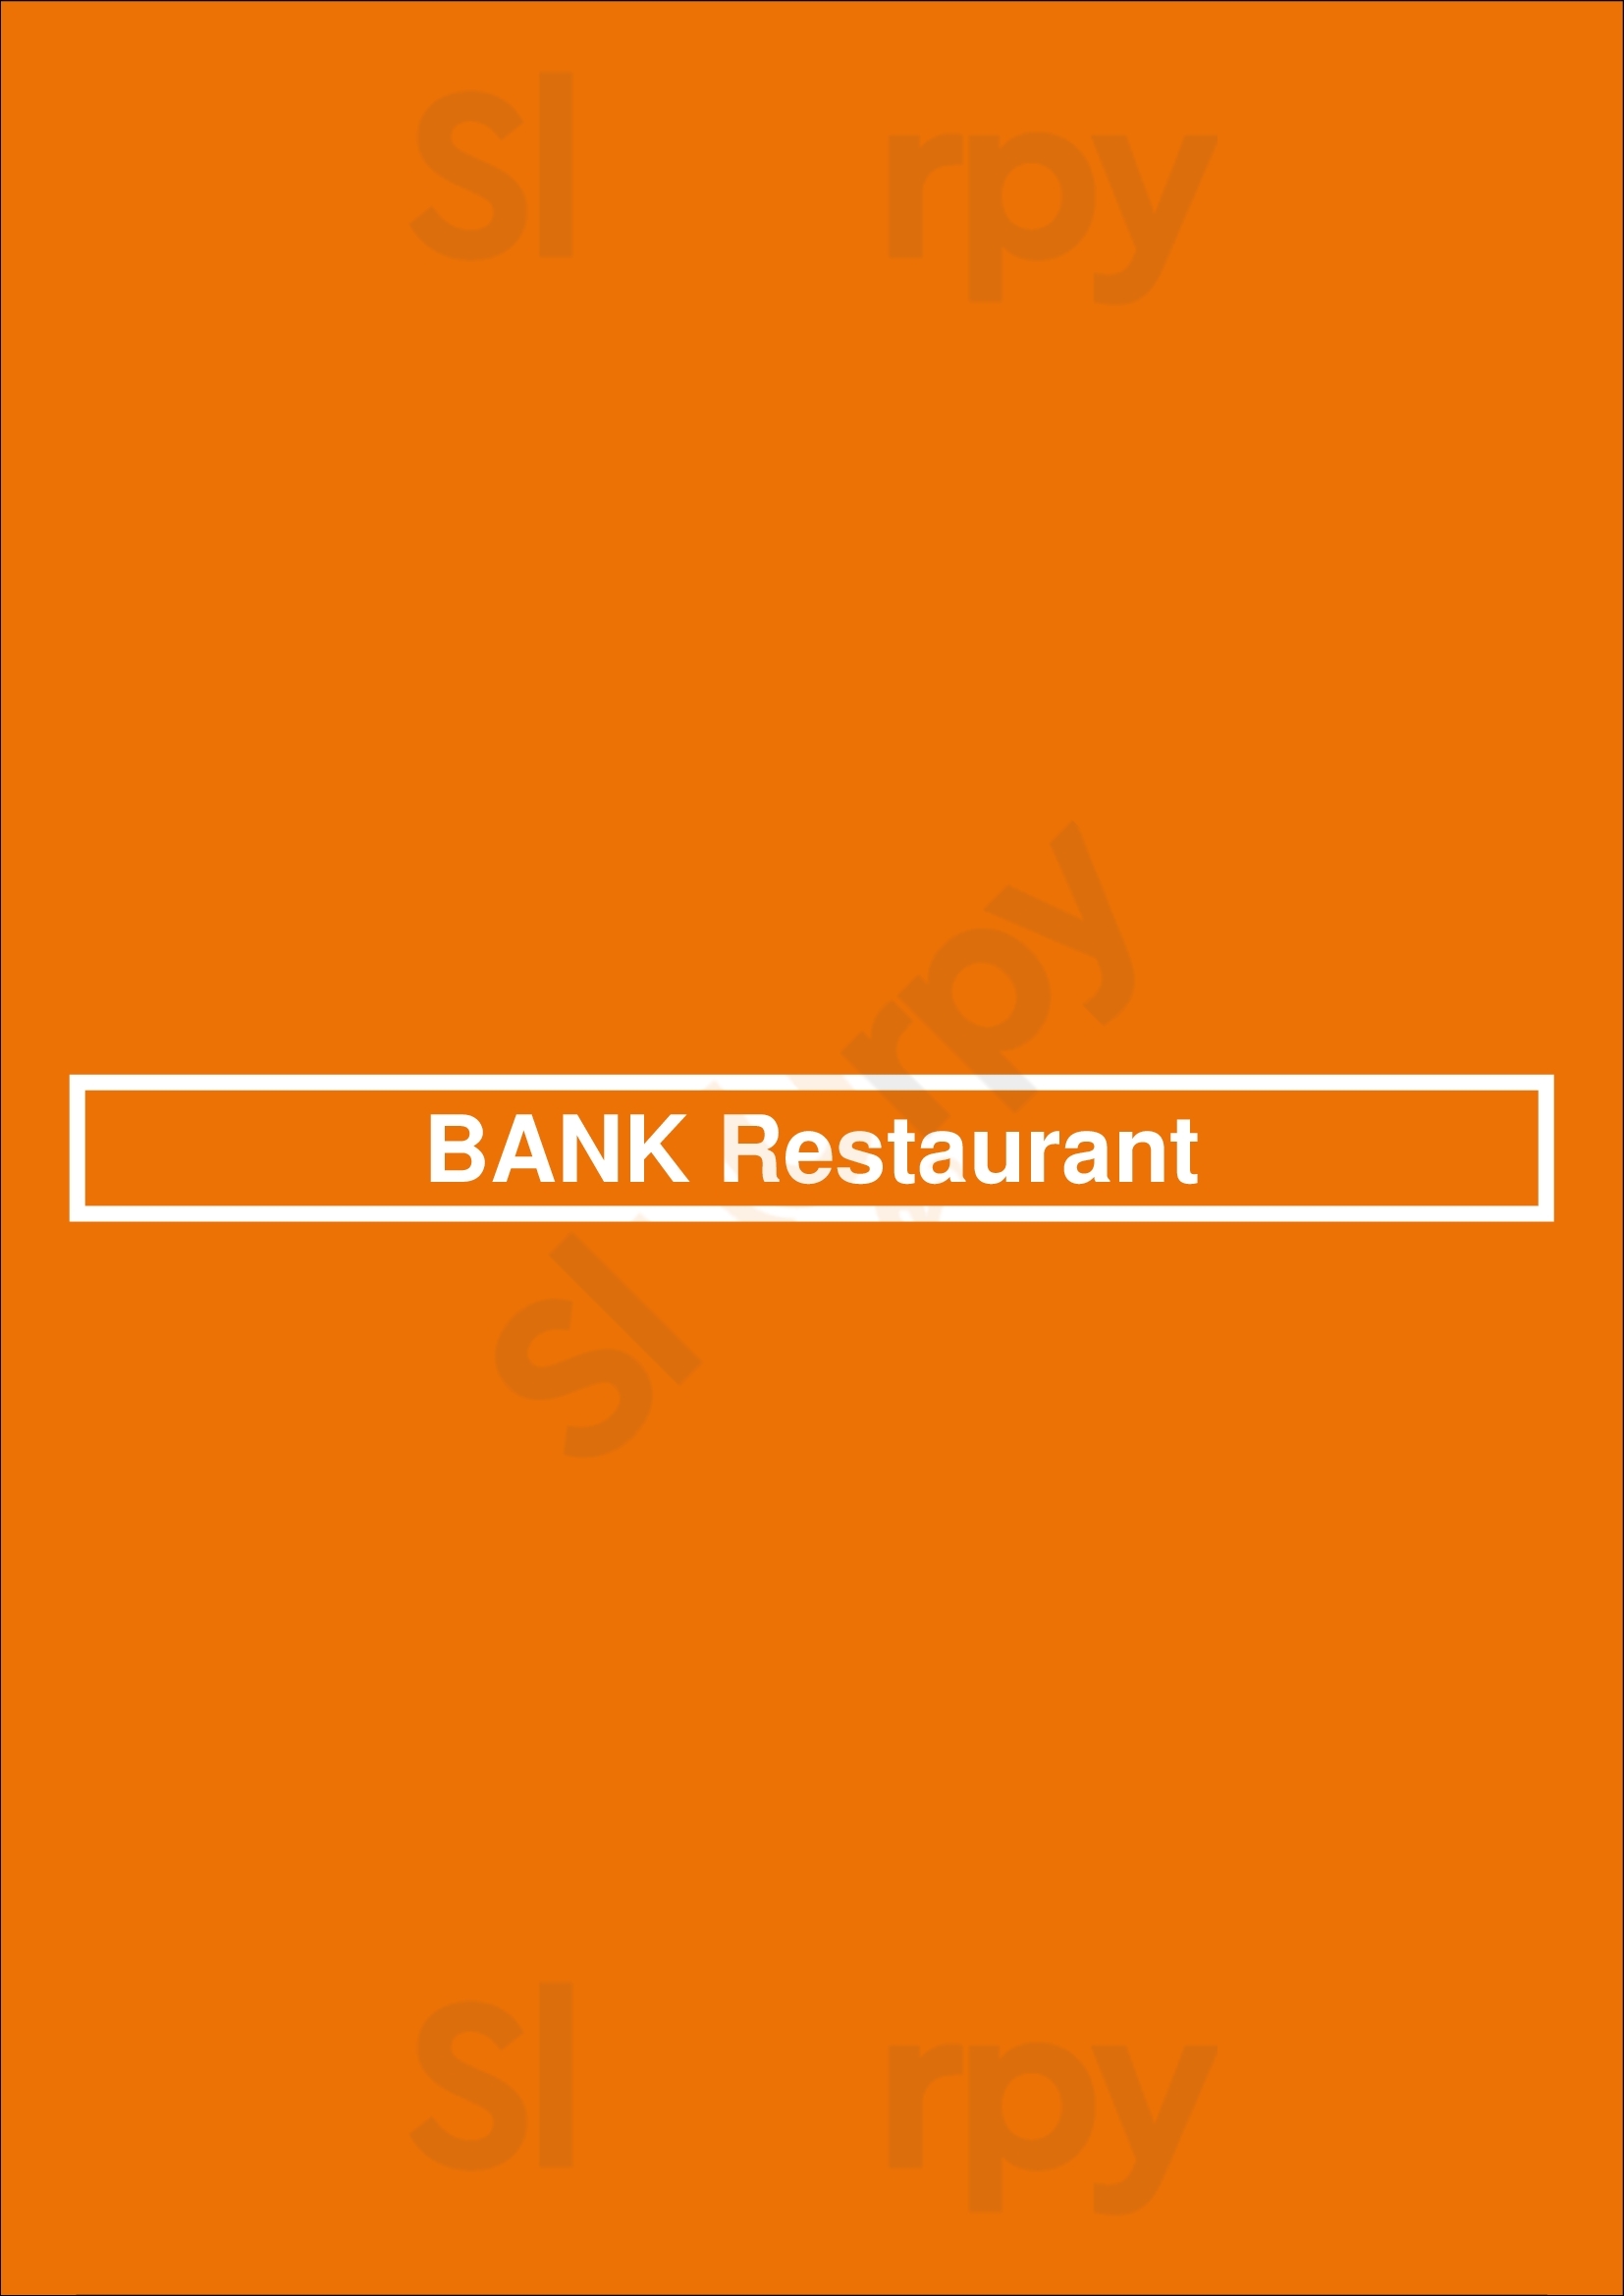 Bank Restaurant Minneapolis Menu - 1